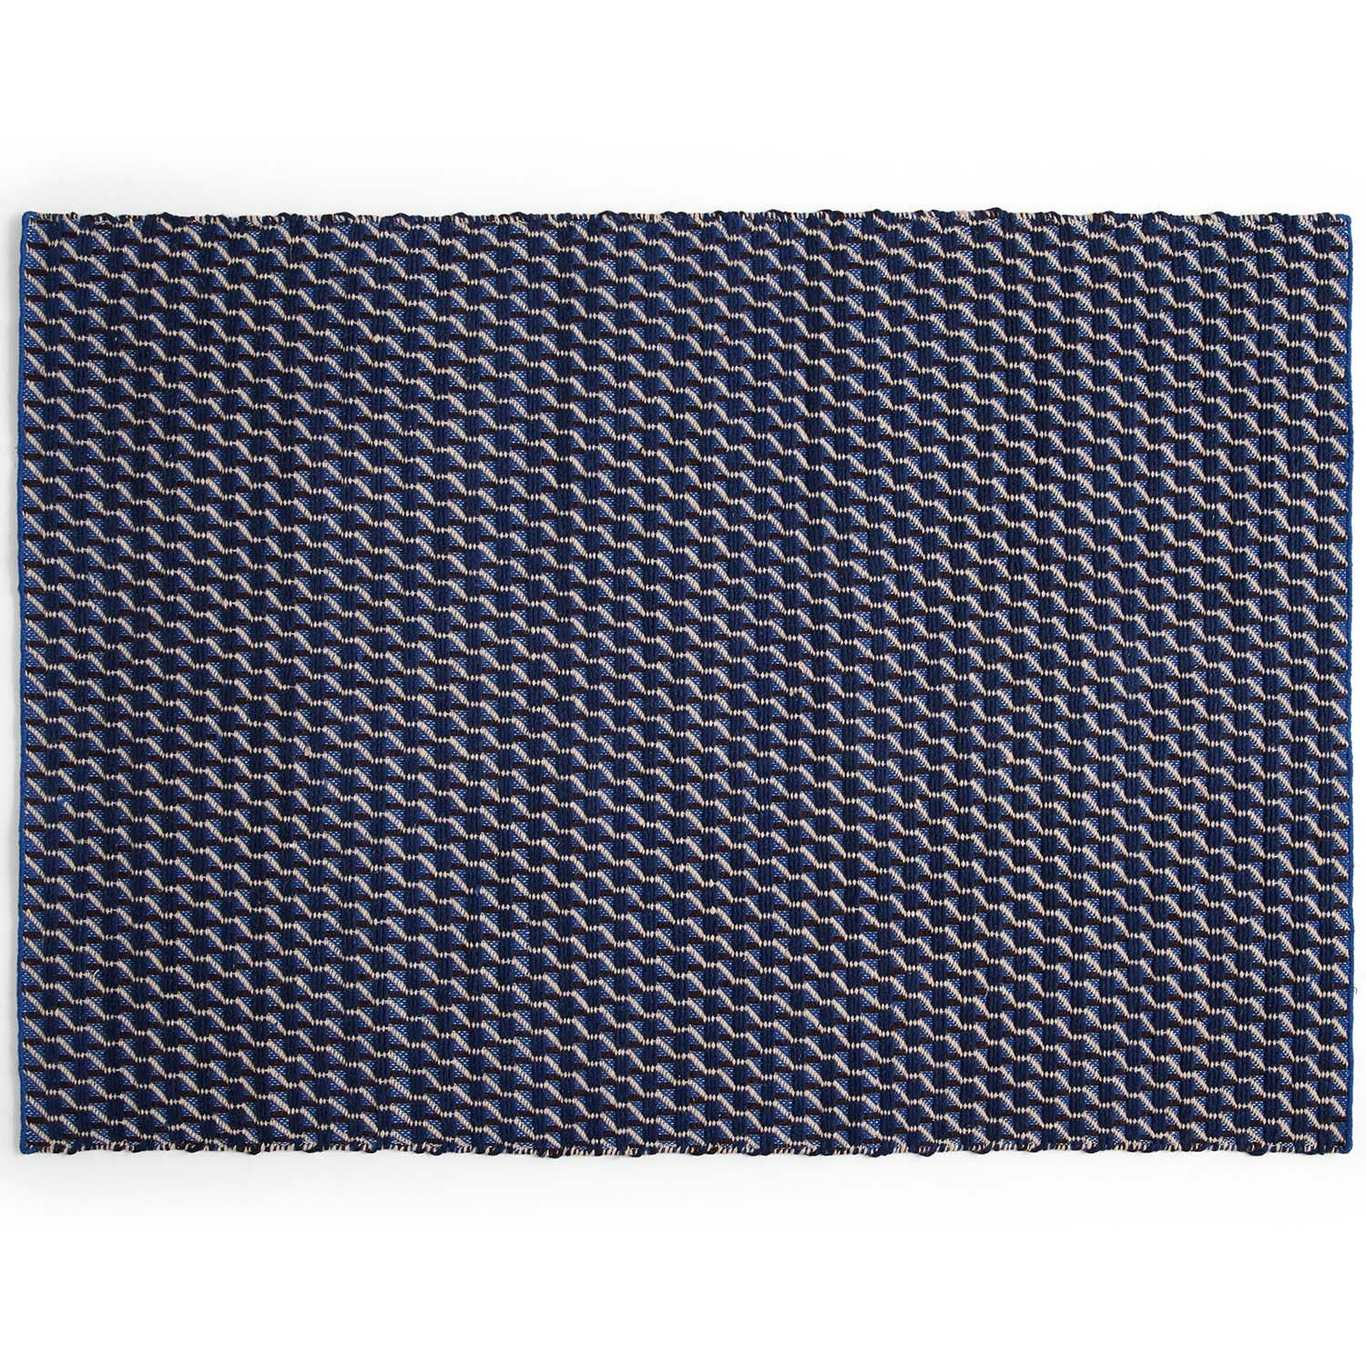 Channel Teppich Blau/Weiß, 170x240 cm